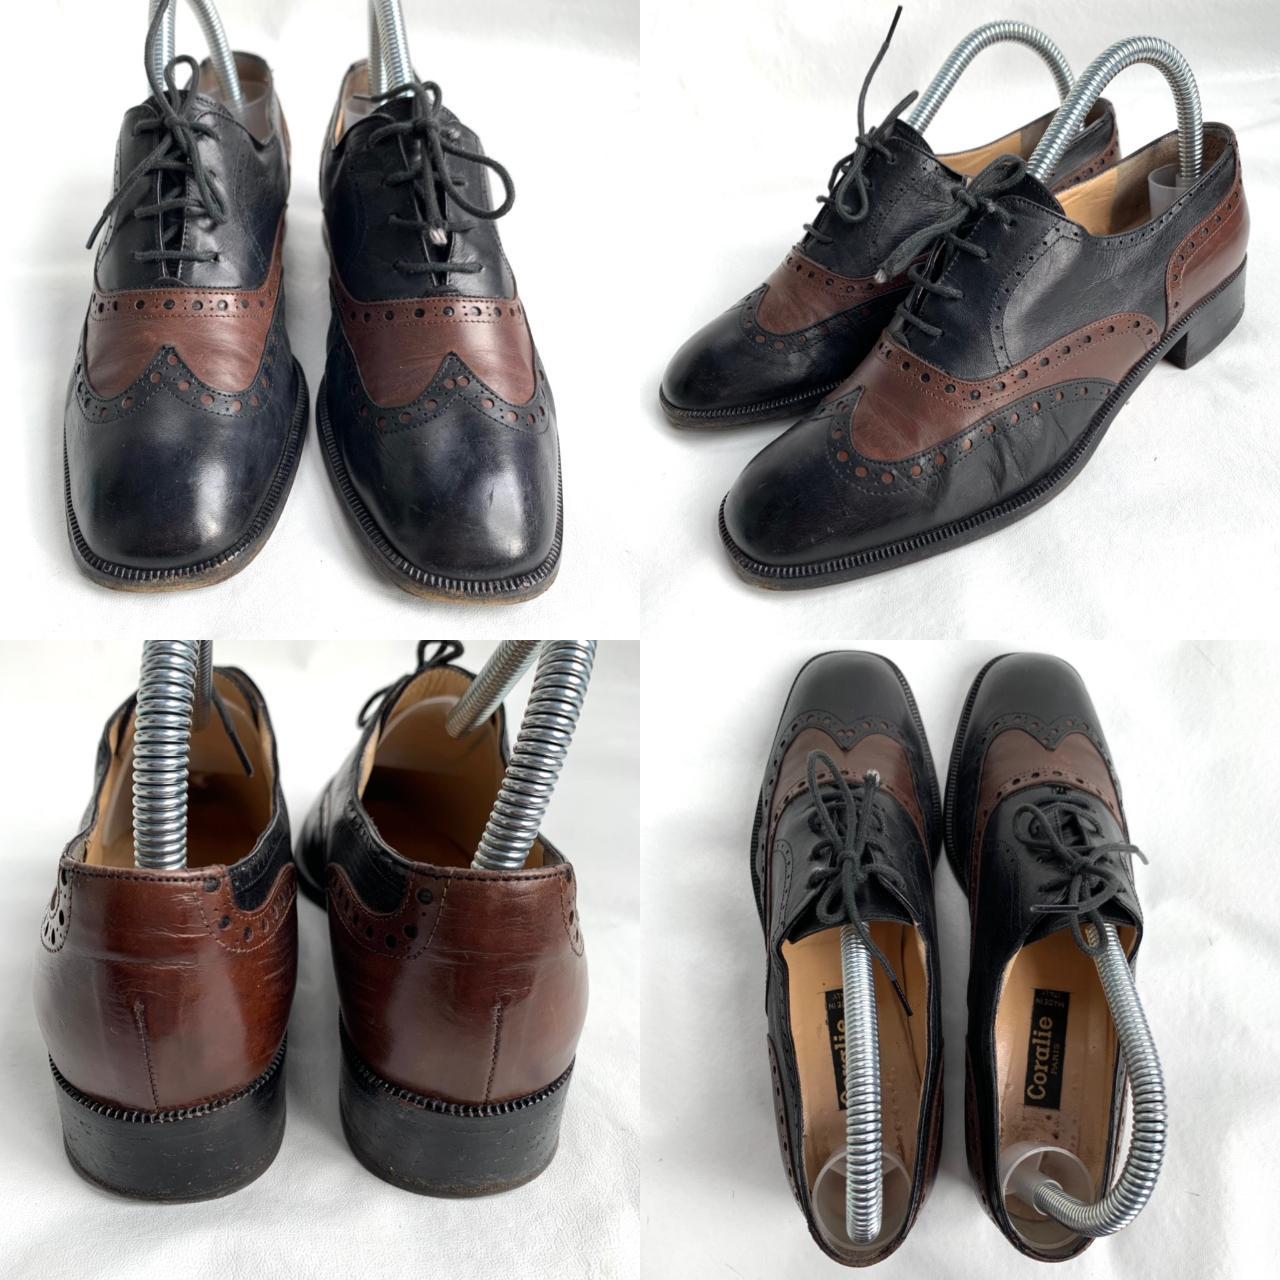 Product Image 2 - Vintage wingtip shoes, Coralie Paris,